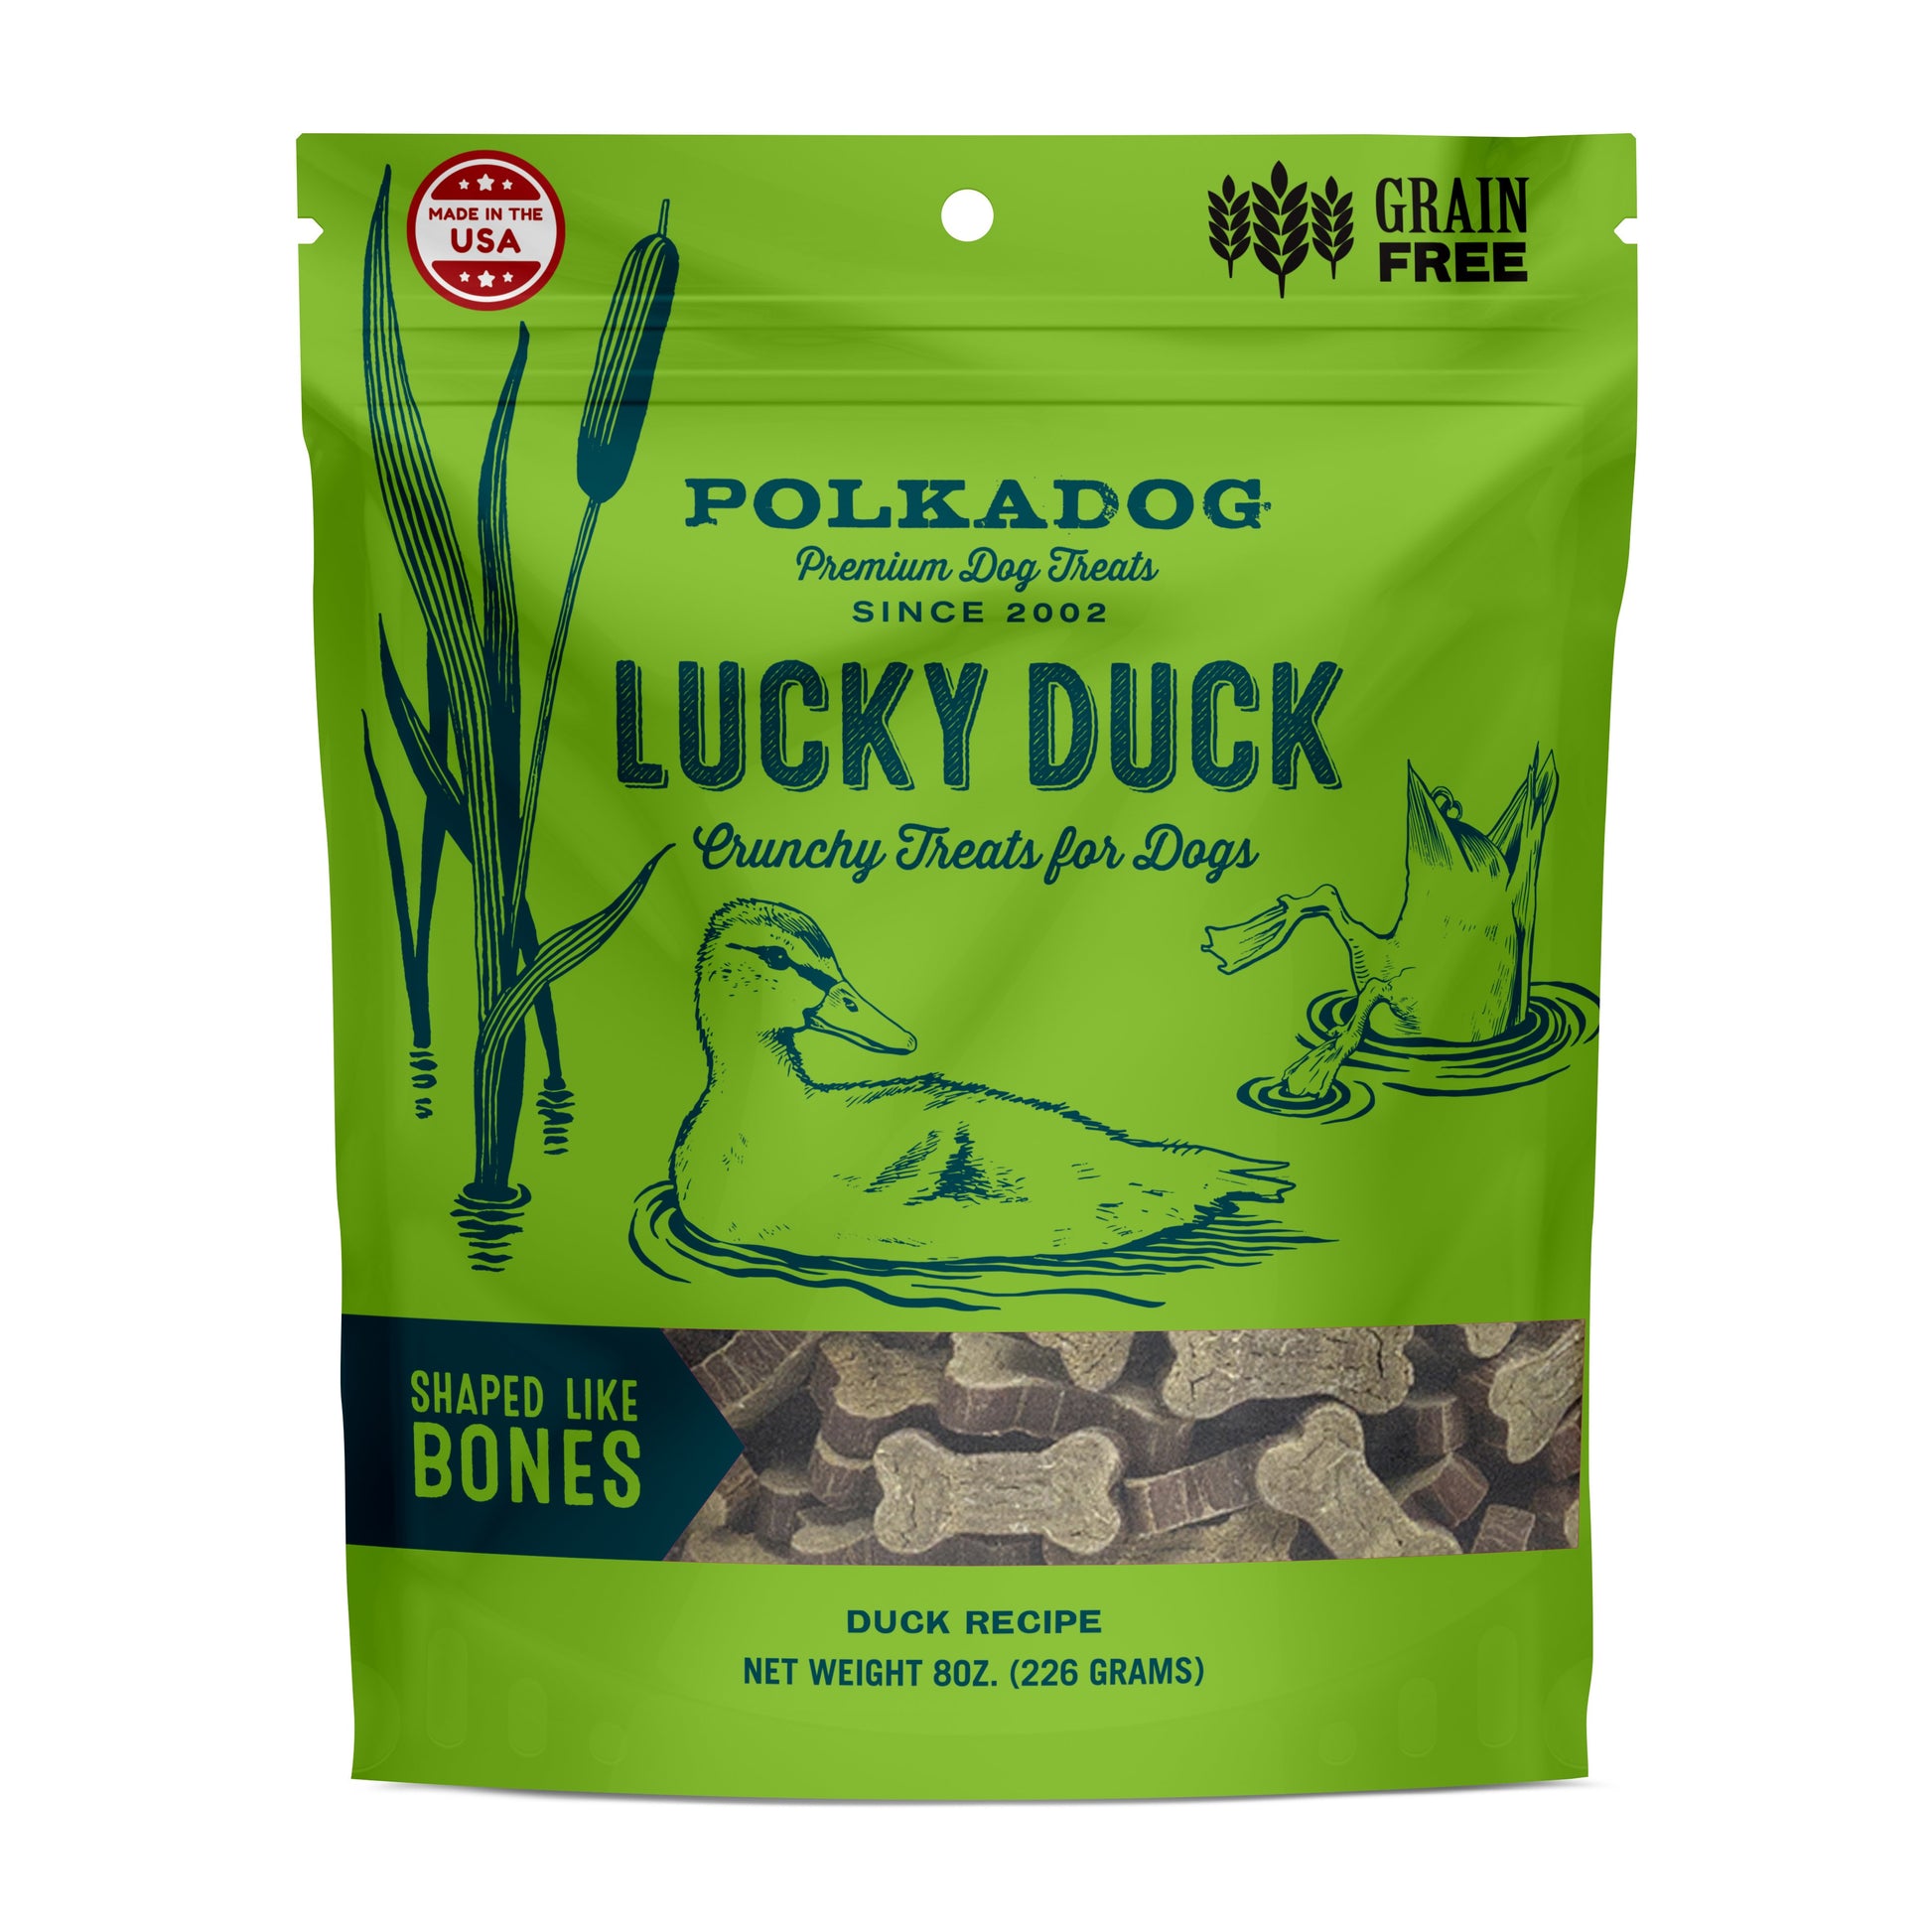 PolkaDog - Lucky Duck Treats - Chubbs Bars, Treats - pet shampoo, Woofur - Chubbs Bars Company, Woofur Natural Pet Products - Chubbs Bars Canada